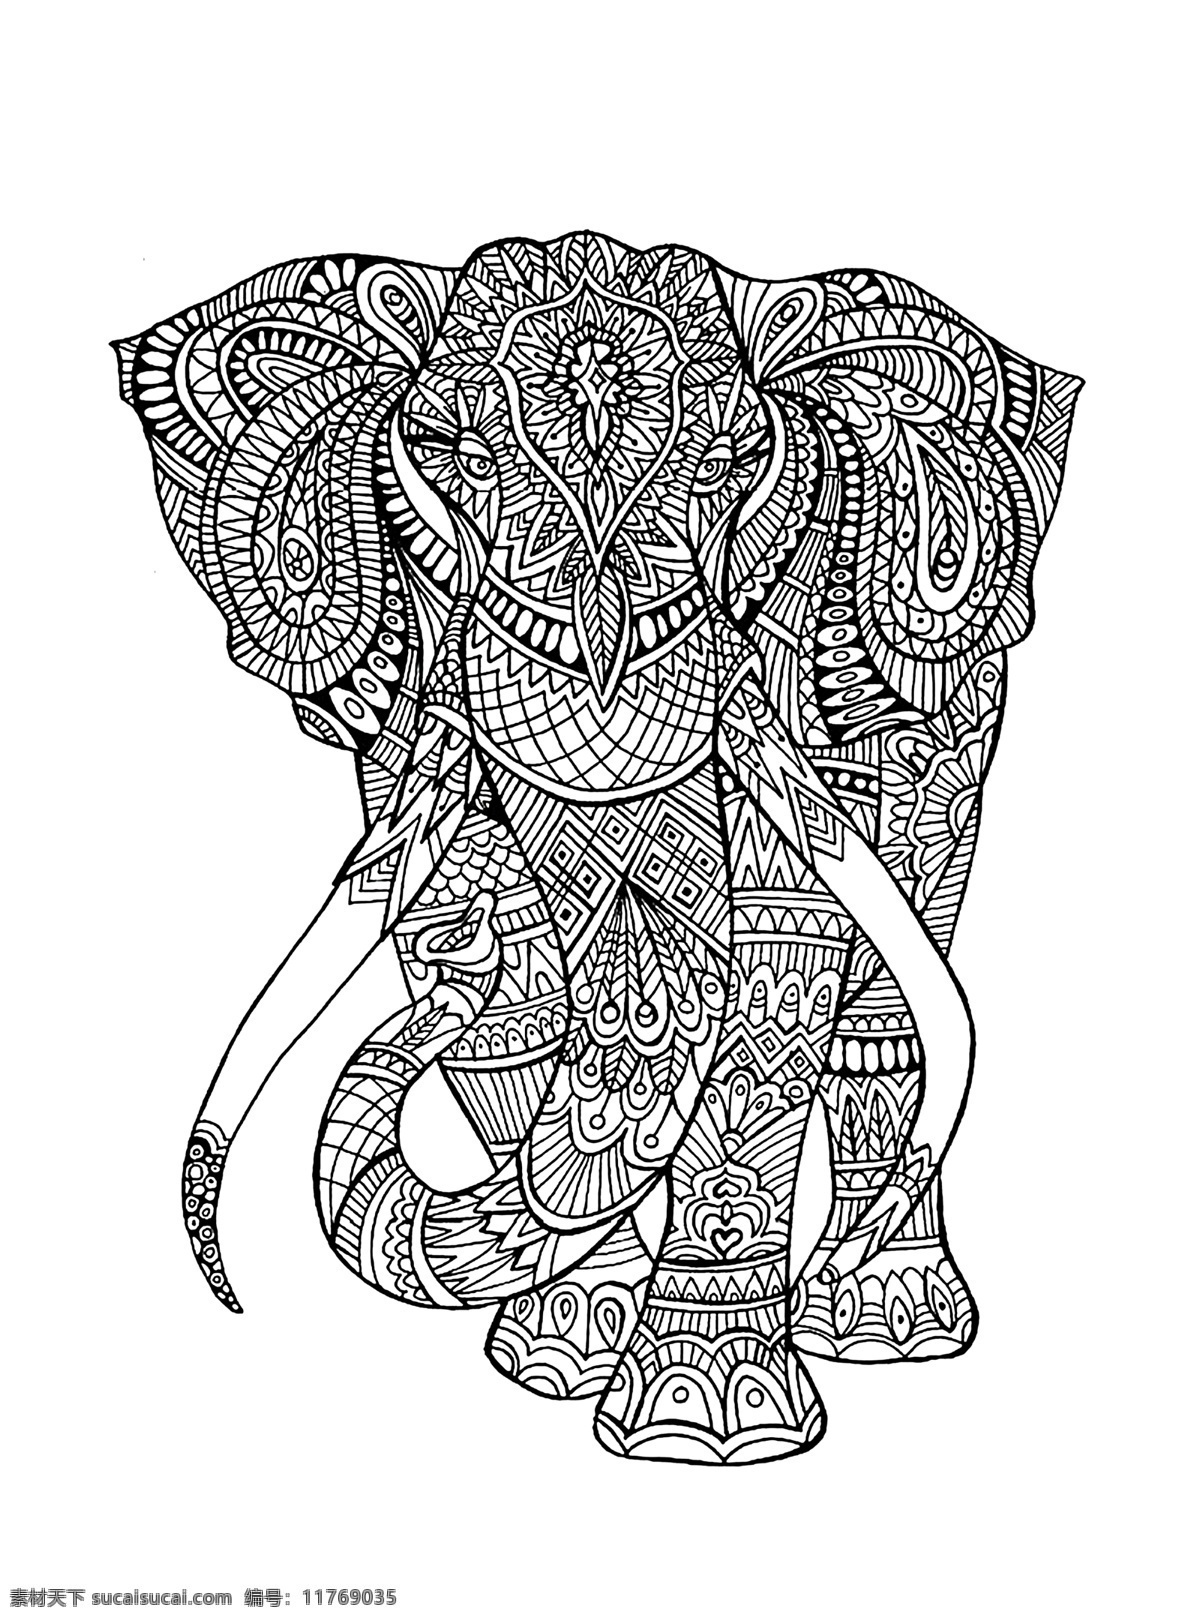 大象 卡通 花纹 花纹大象印花 服装印花 装饰花纹 壁纸 墙纸 卡通动物 装饰画 卡通设计